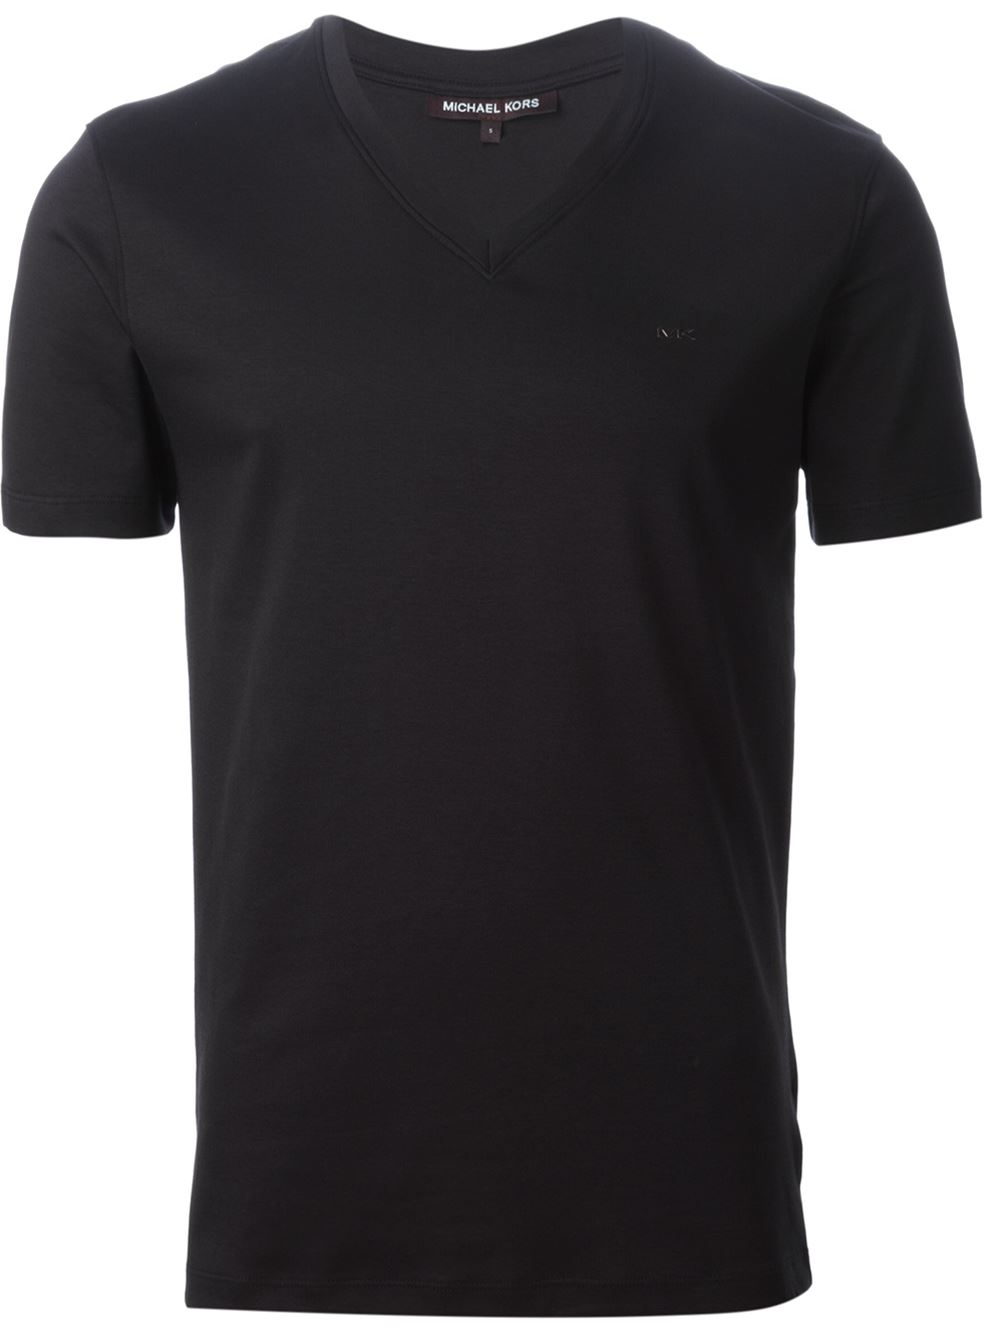 Michael Kors V Neck T Shirt In Black For Men Lyst